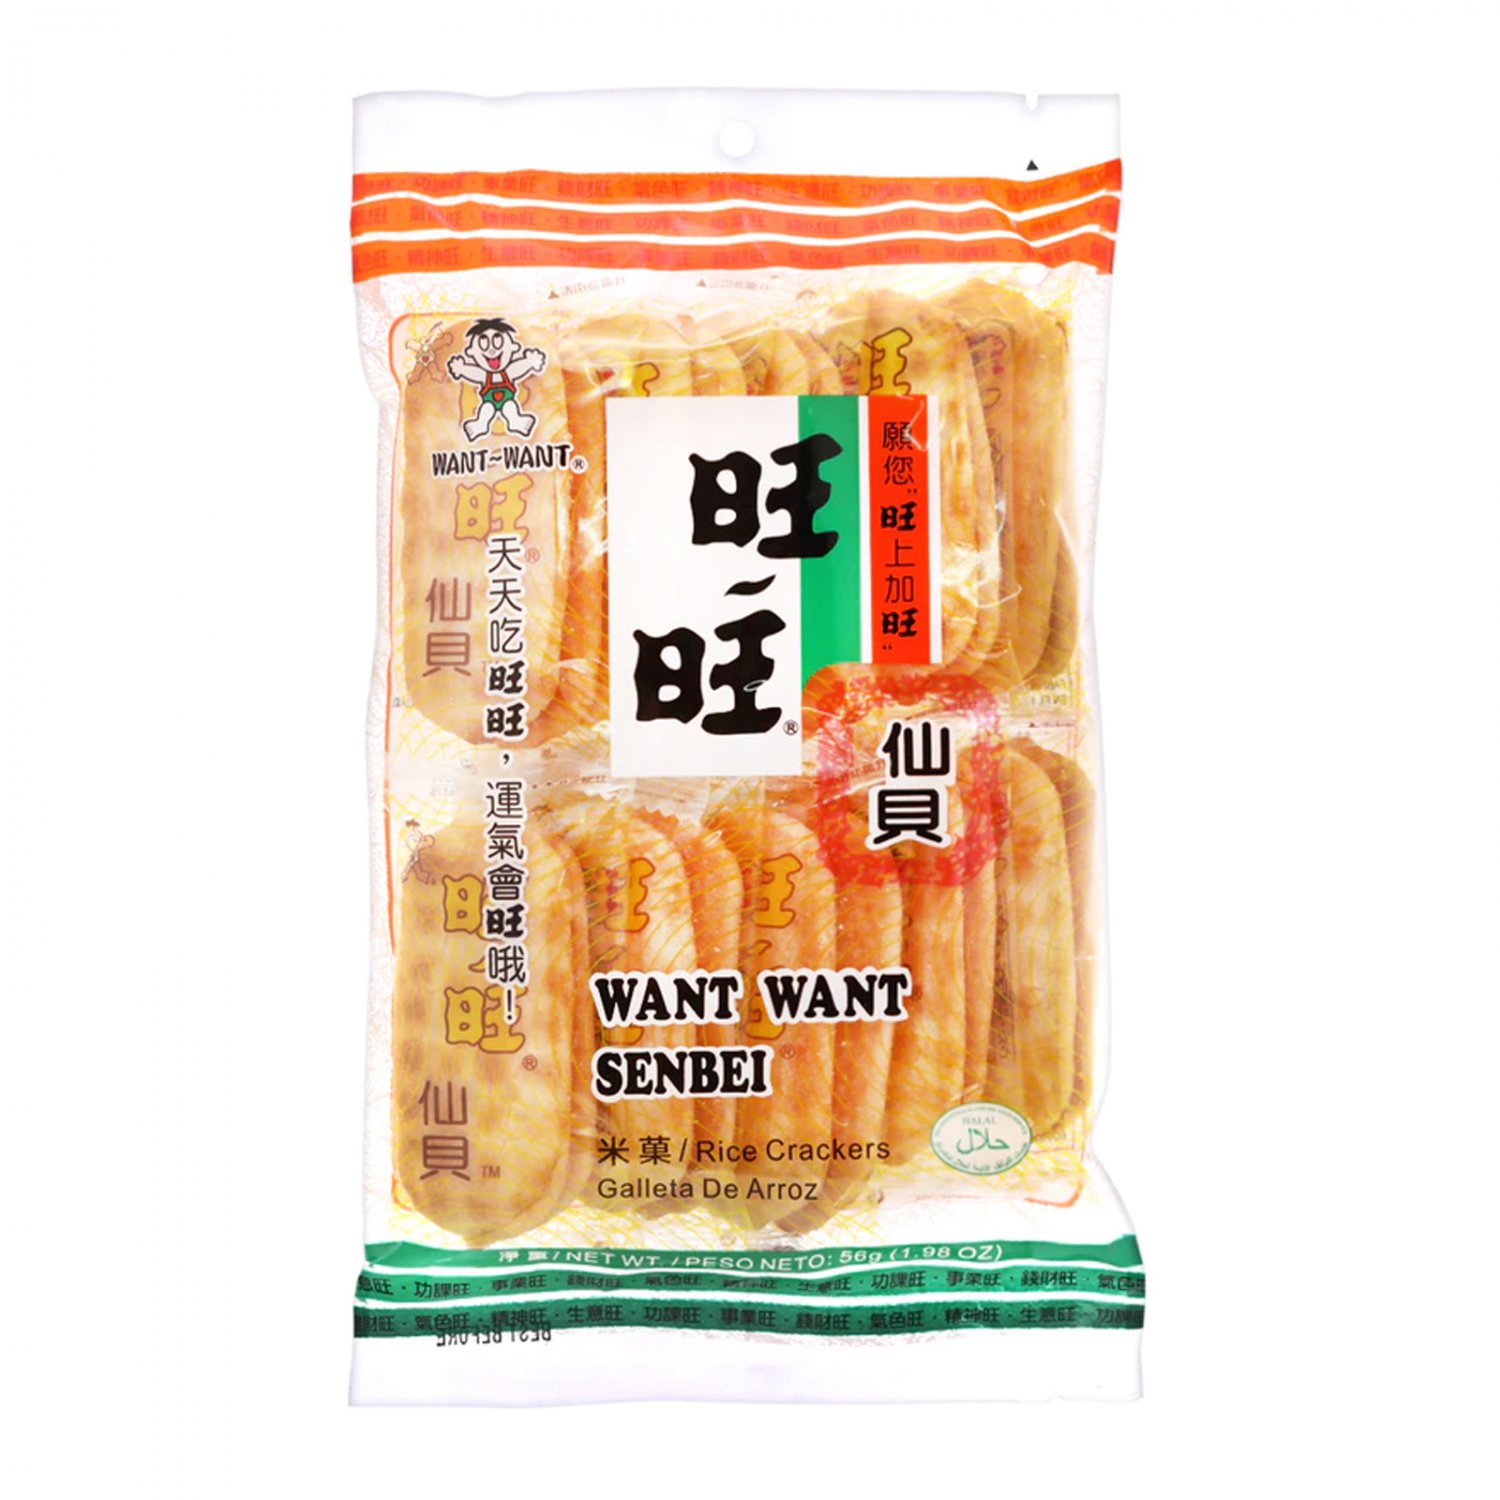 Want Want SENBEI Rice Crackers 56g Family pack æ�ºæ�ºä»�è²� party snacks TV ball games snack